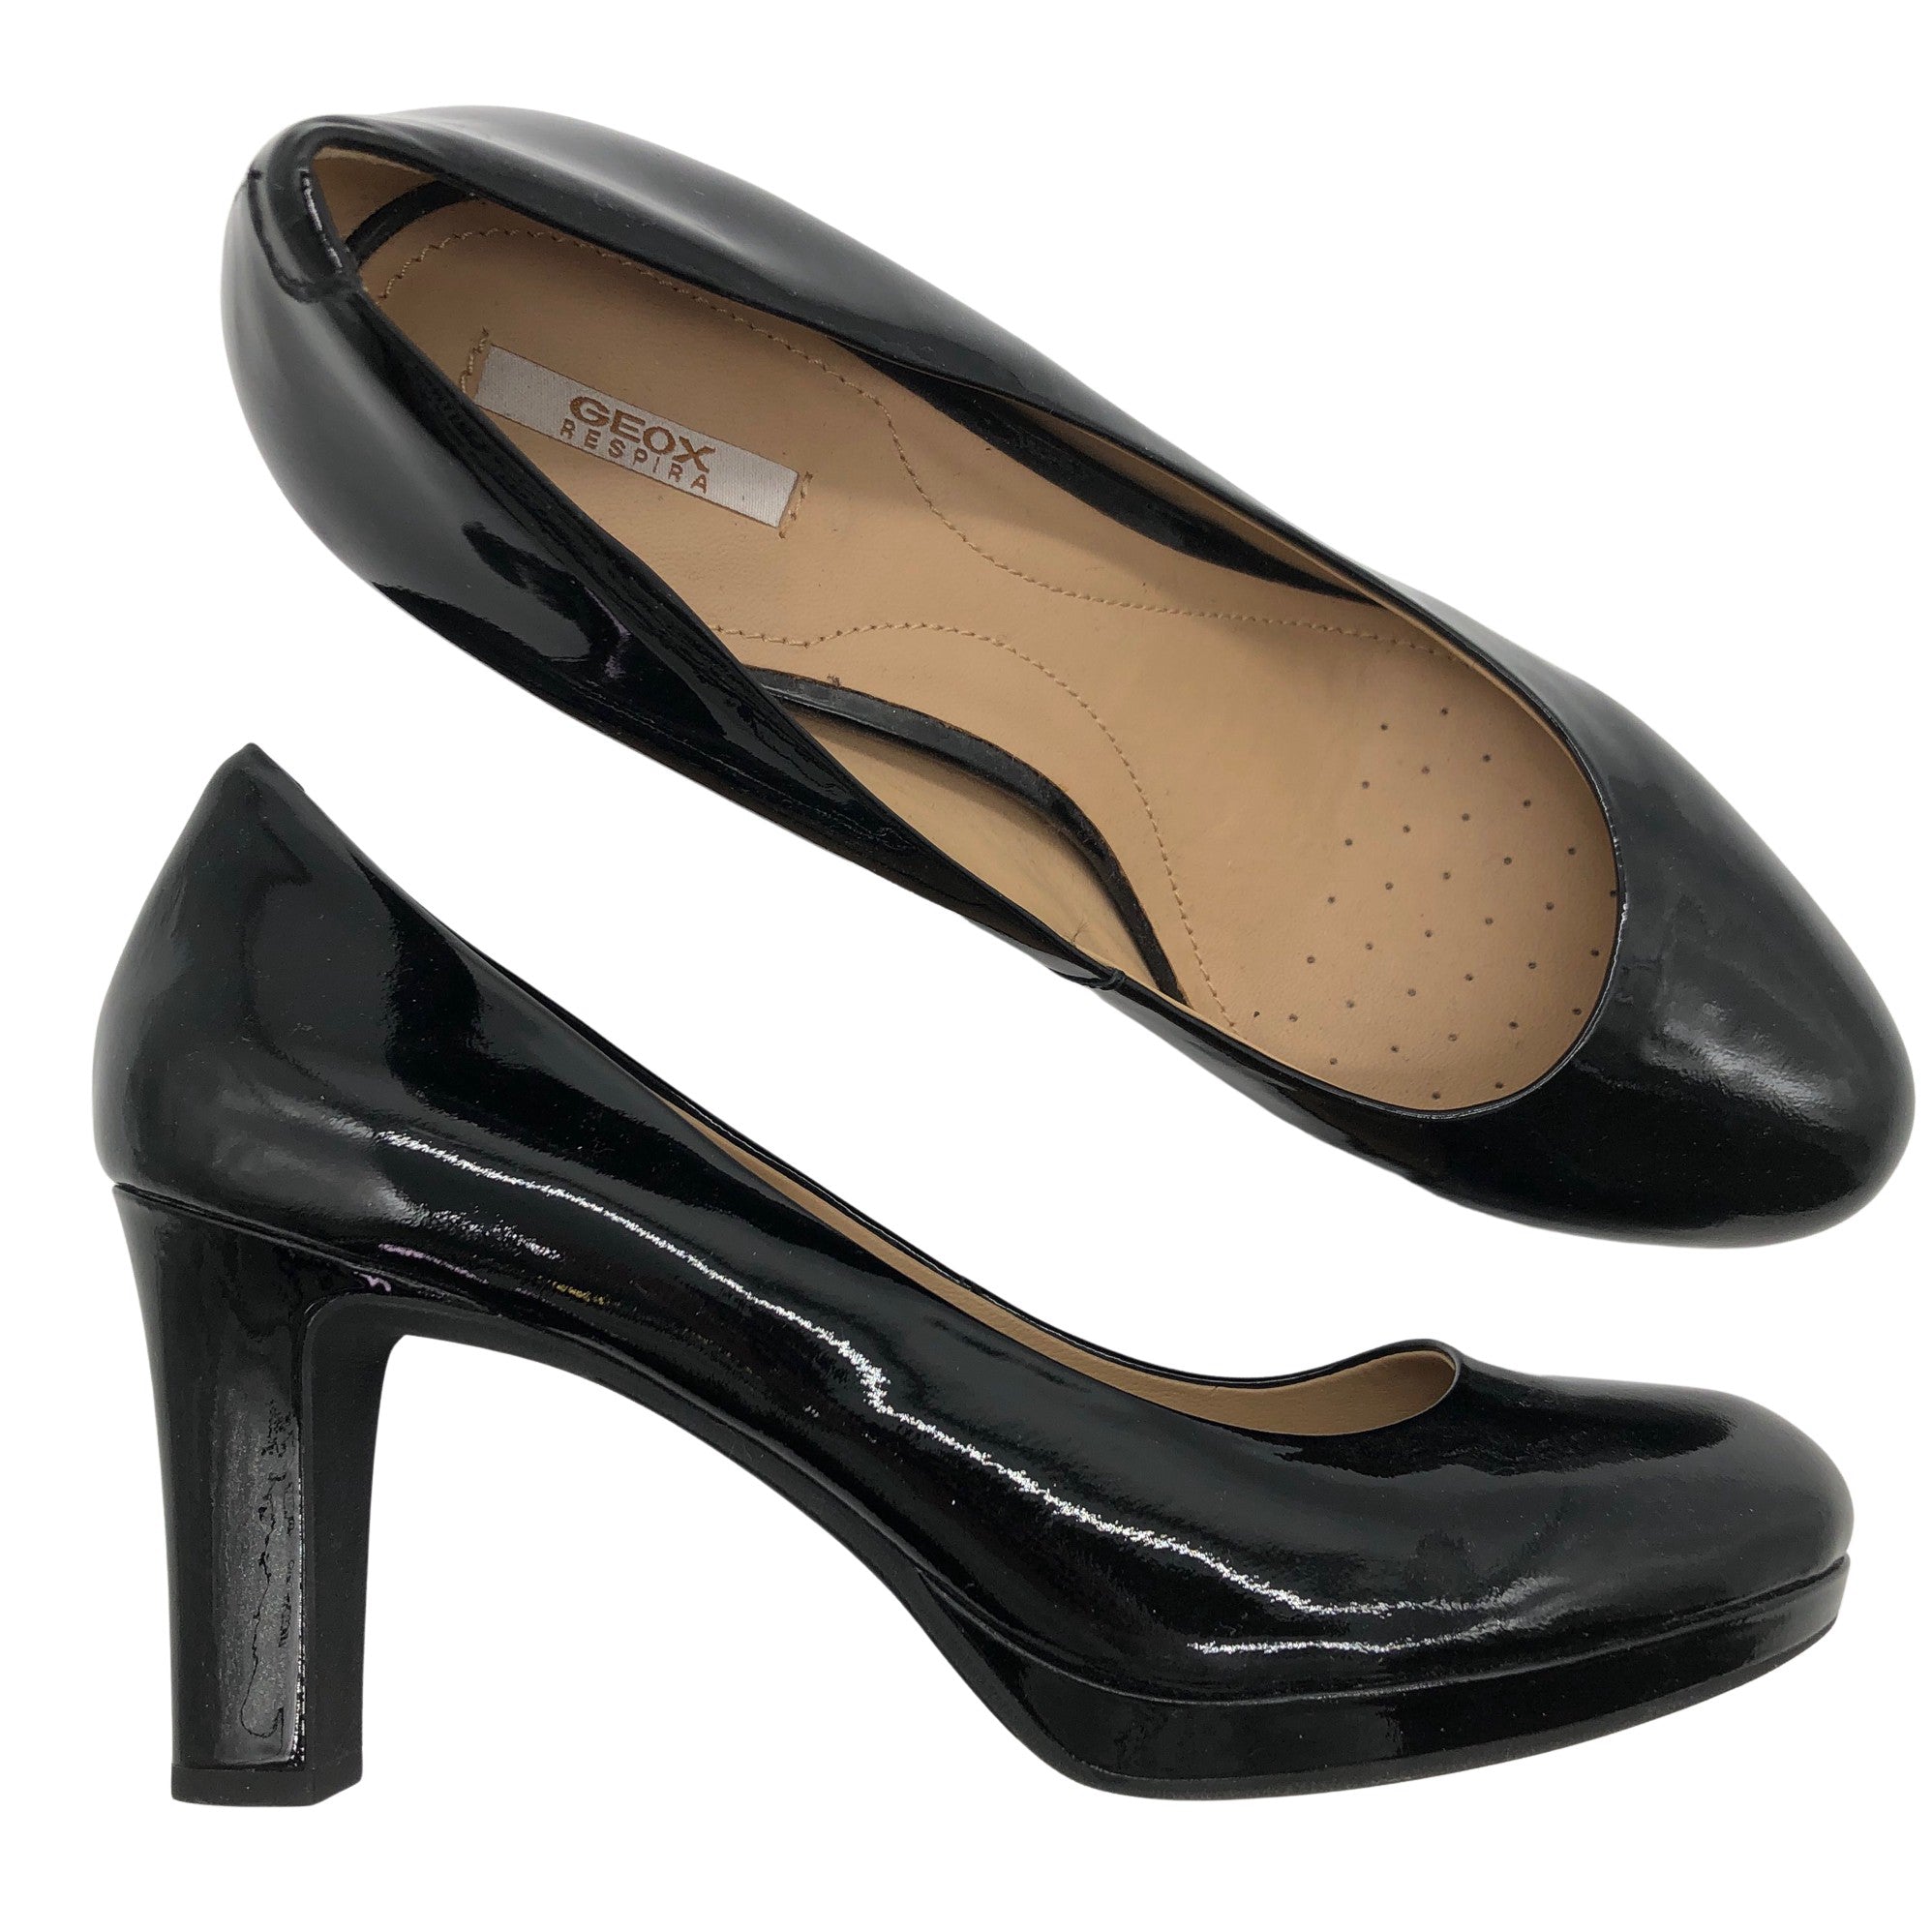 Women's Geox High heels, size 41 (Black) Emmy